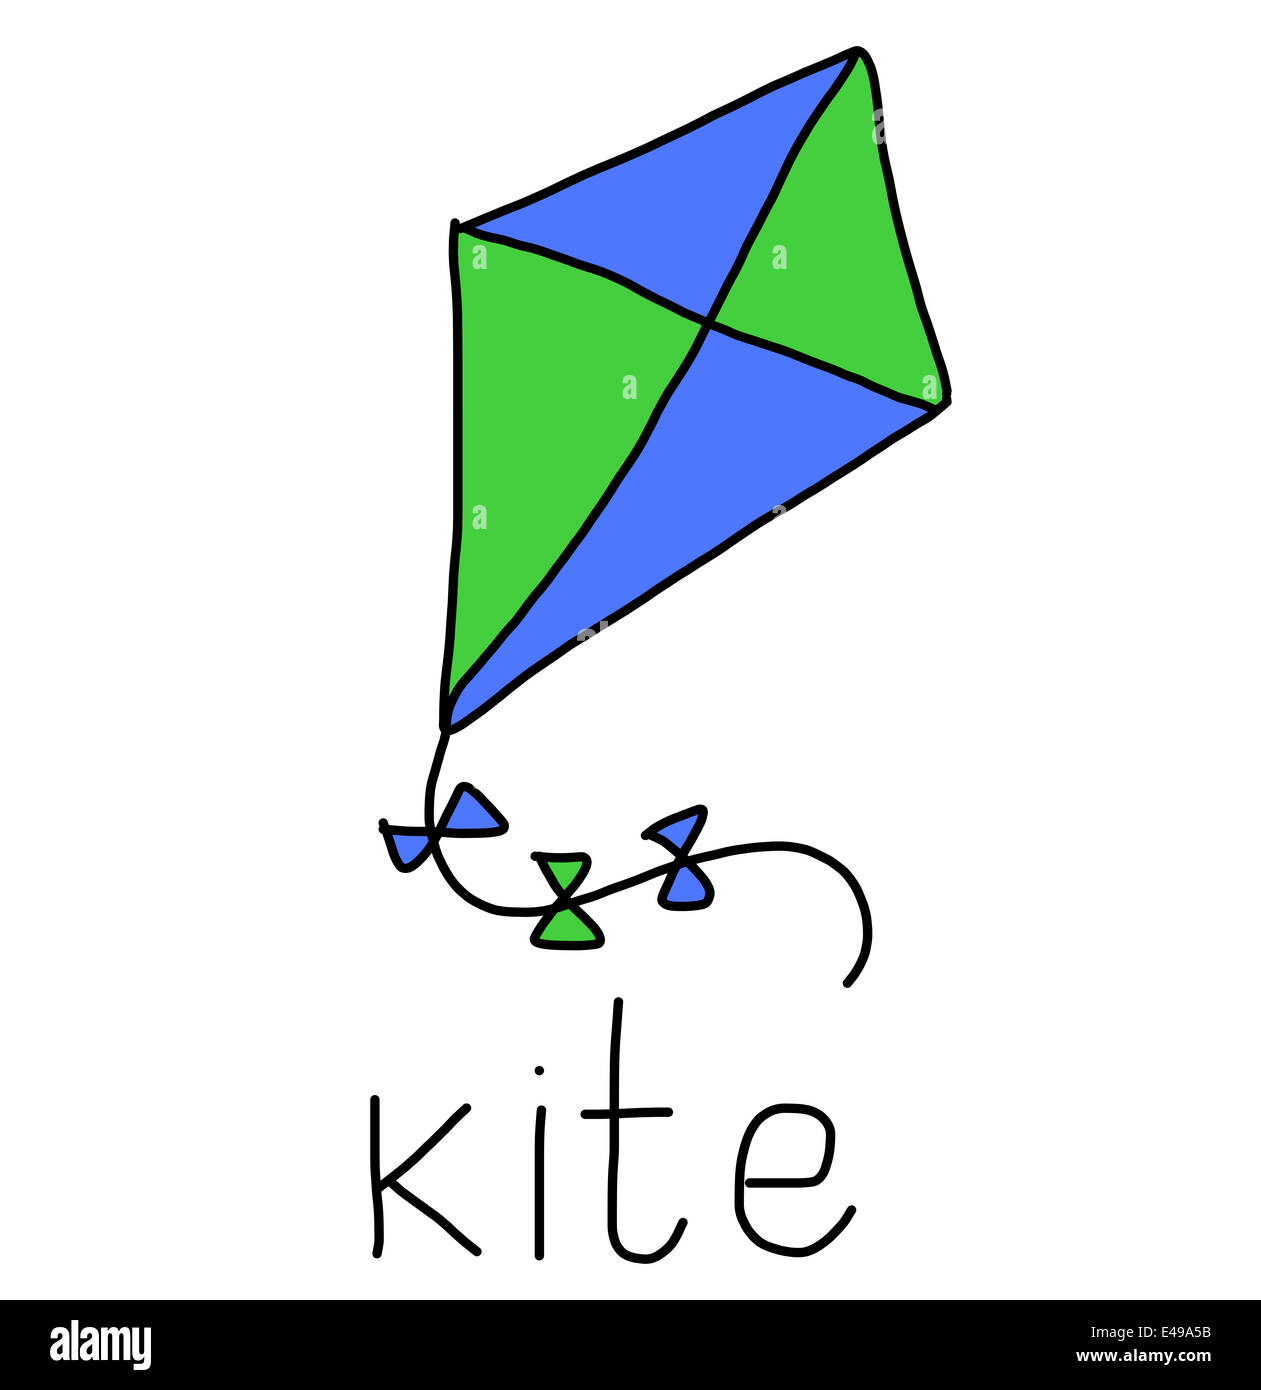 Illustrazione di alfabeto parole - kite Foto Stock